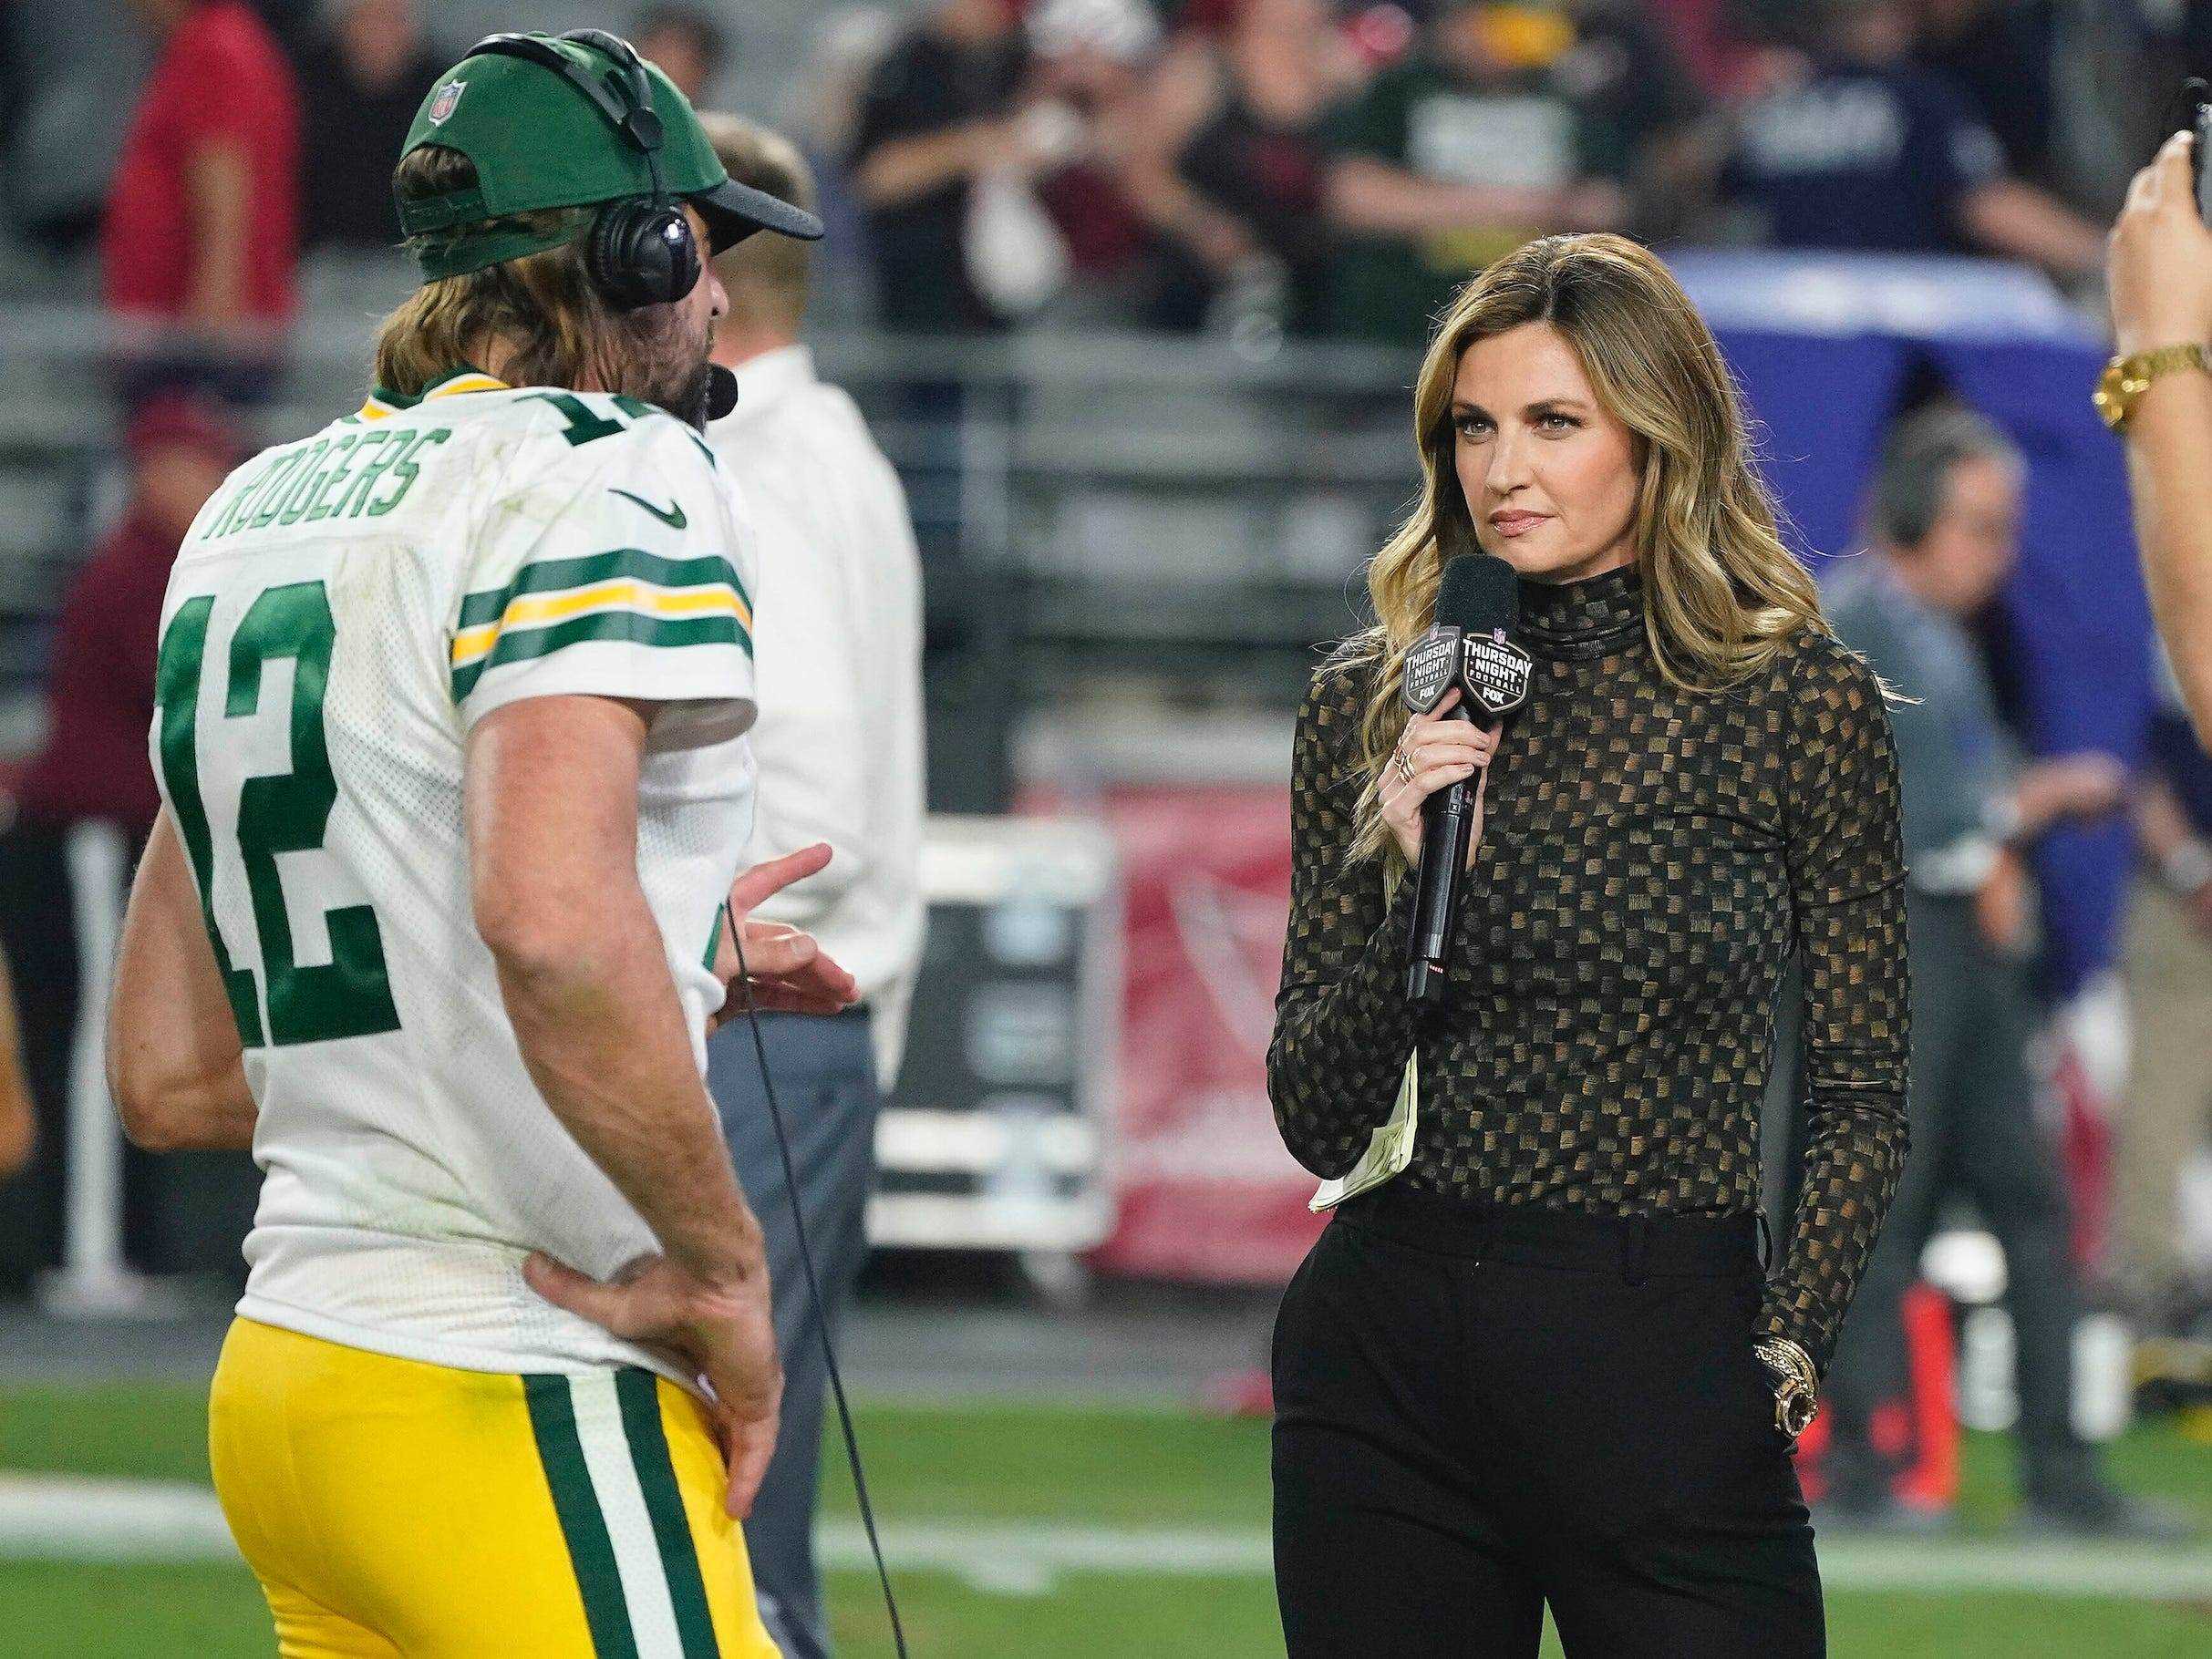 Erin Andrews (rechts) interviewt den Quarterback Aaron Rodgers der Green Bay Packers.